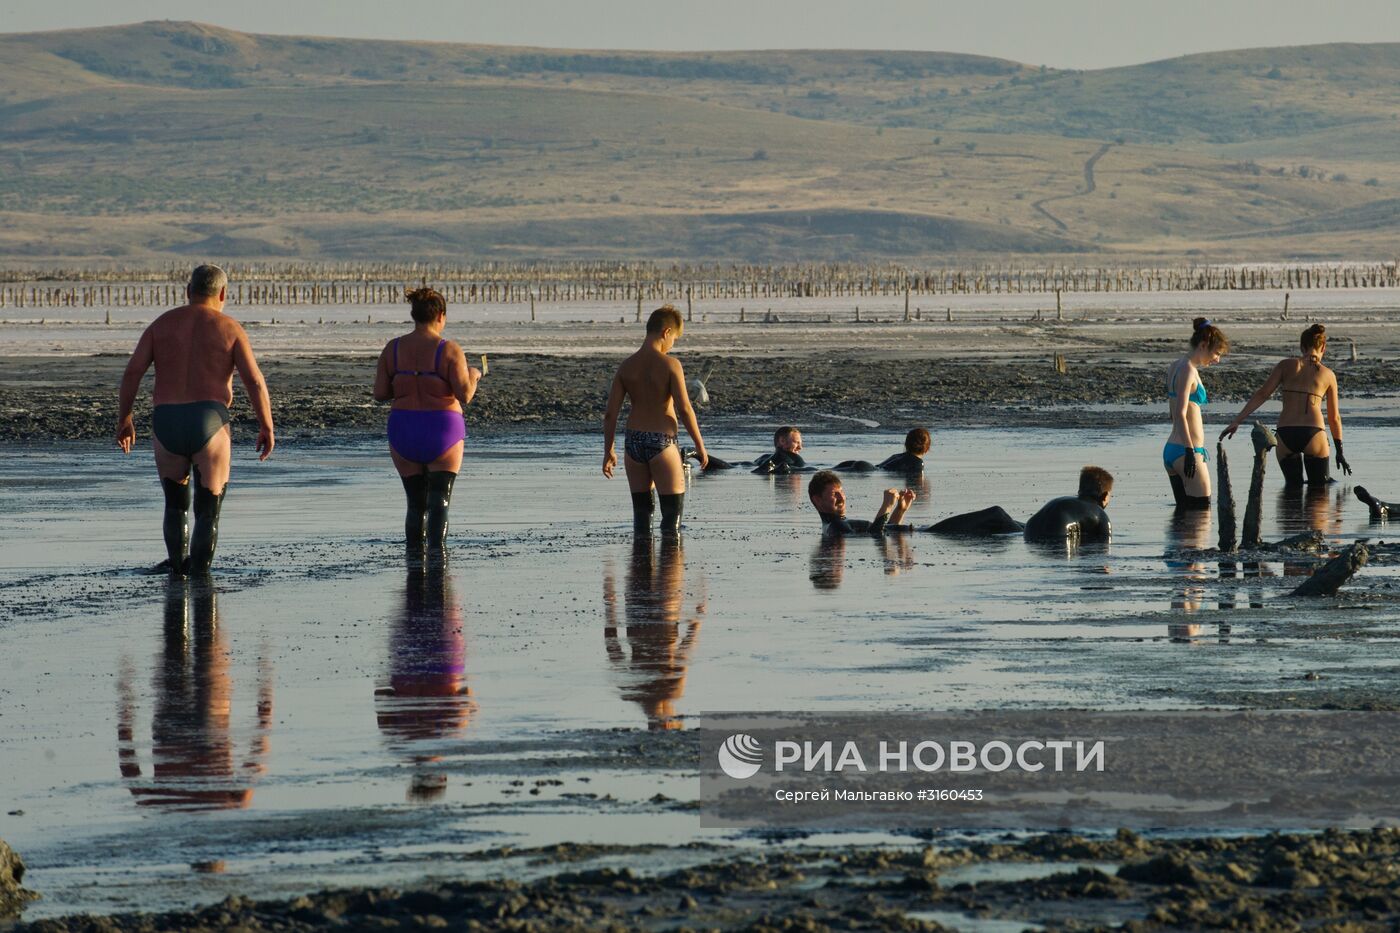 Чокракское озеро в Крыму